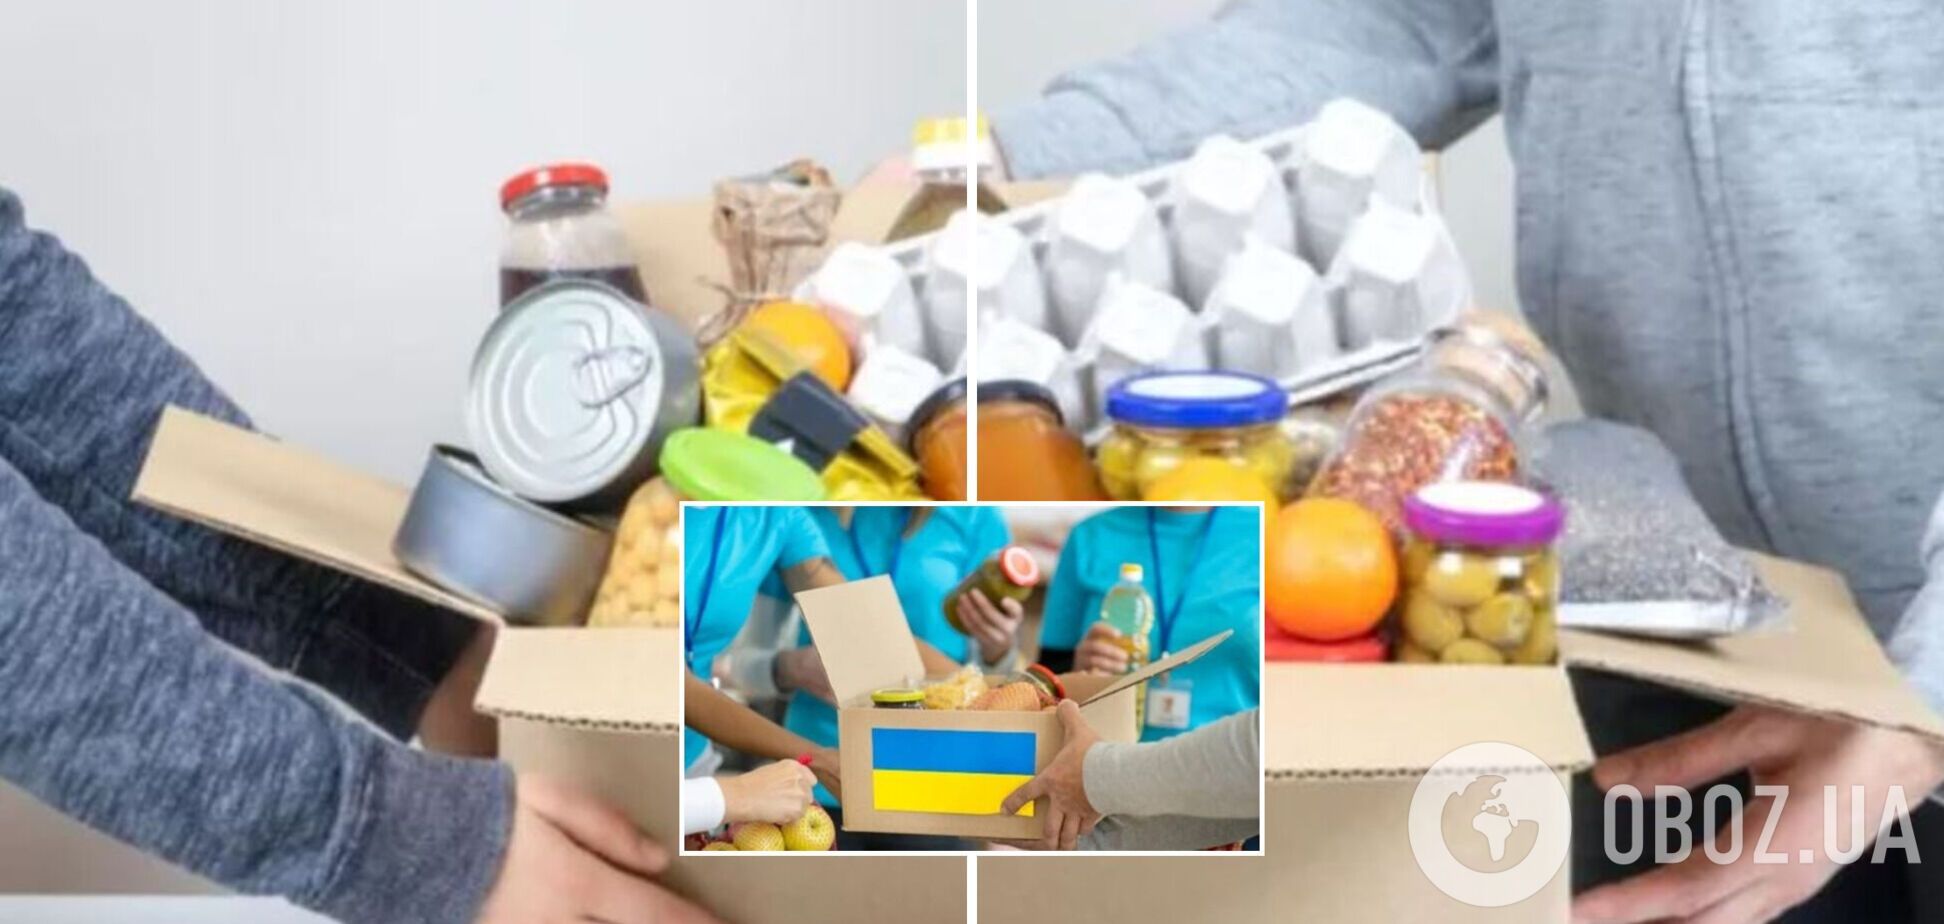 'Подарите набор заботы': украинцам предлагают 'подвесить' благотворительный набор для пострадавших от войны